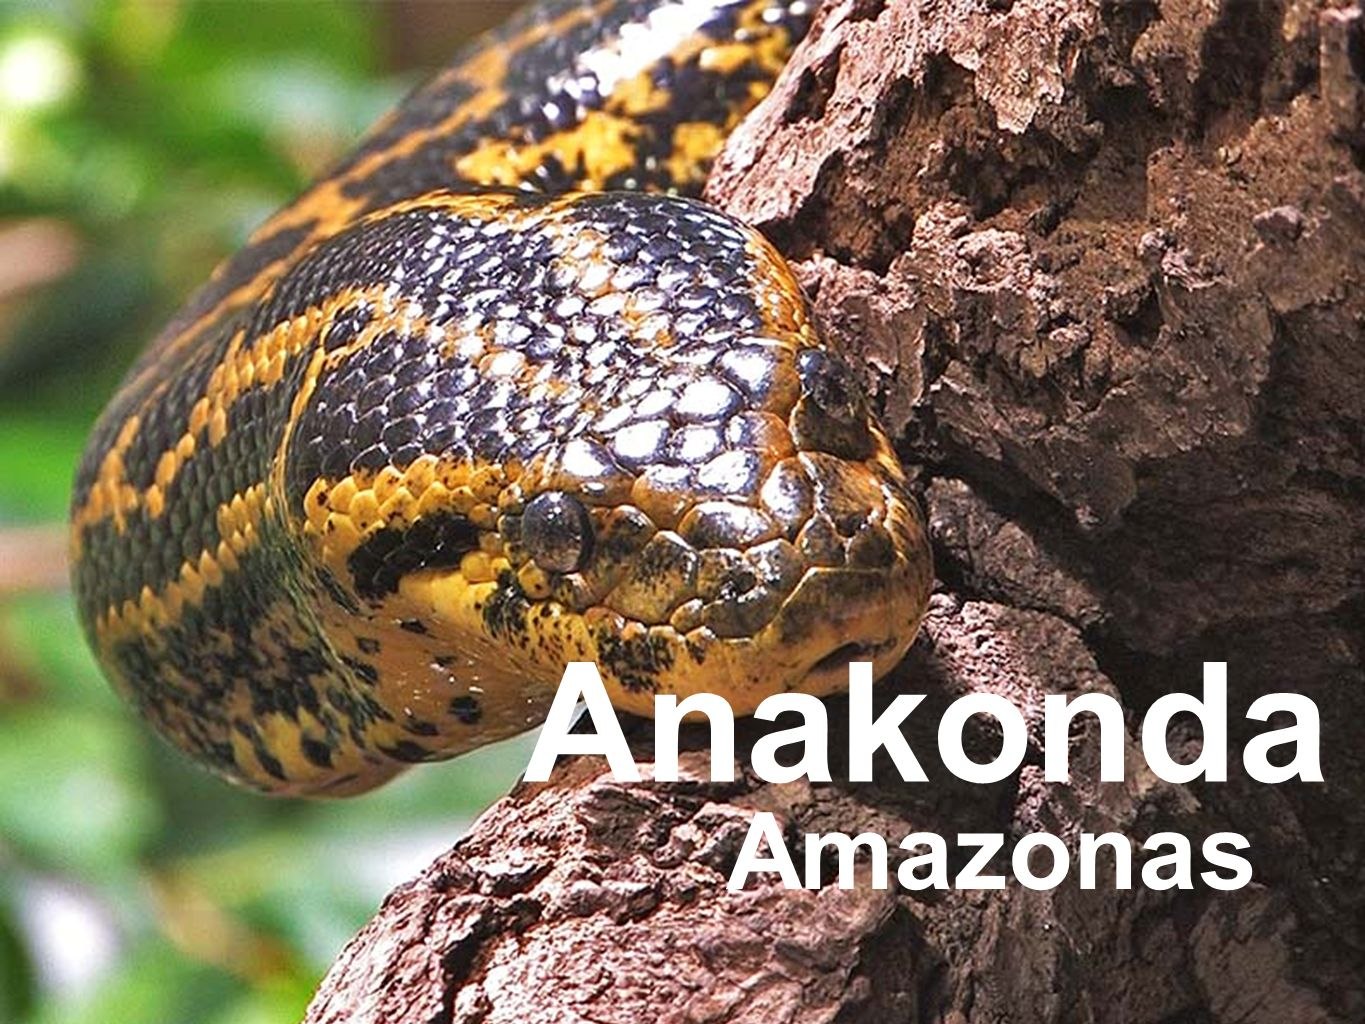 Анаконда материк. Анаконда змея. Анаконда eunectes murinus. Змея Anaconda. Река Амазонка змея Анаконда.